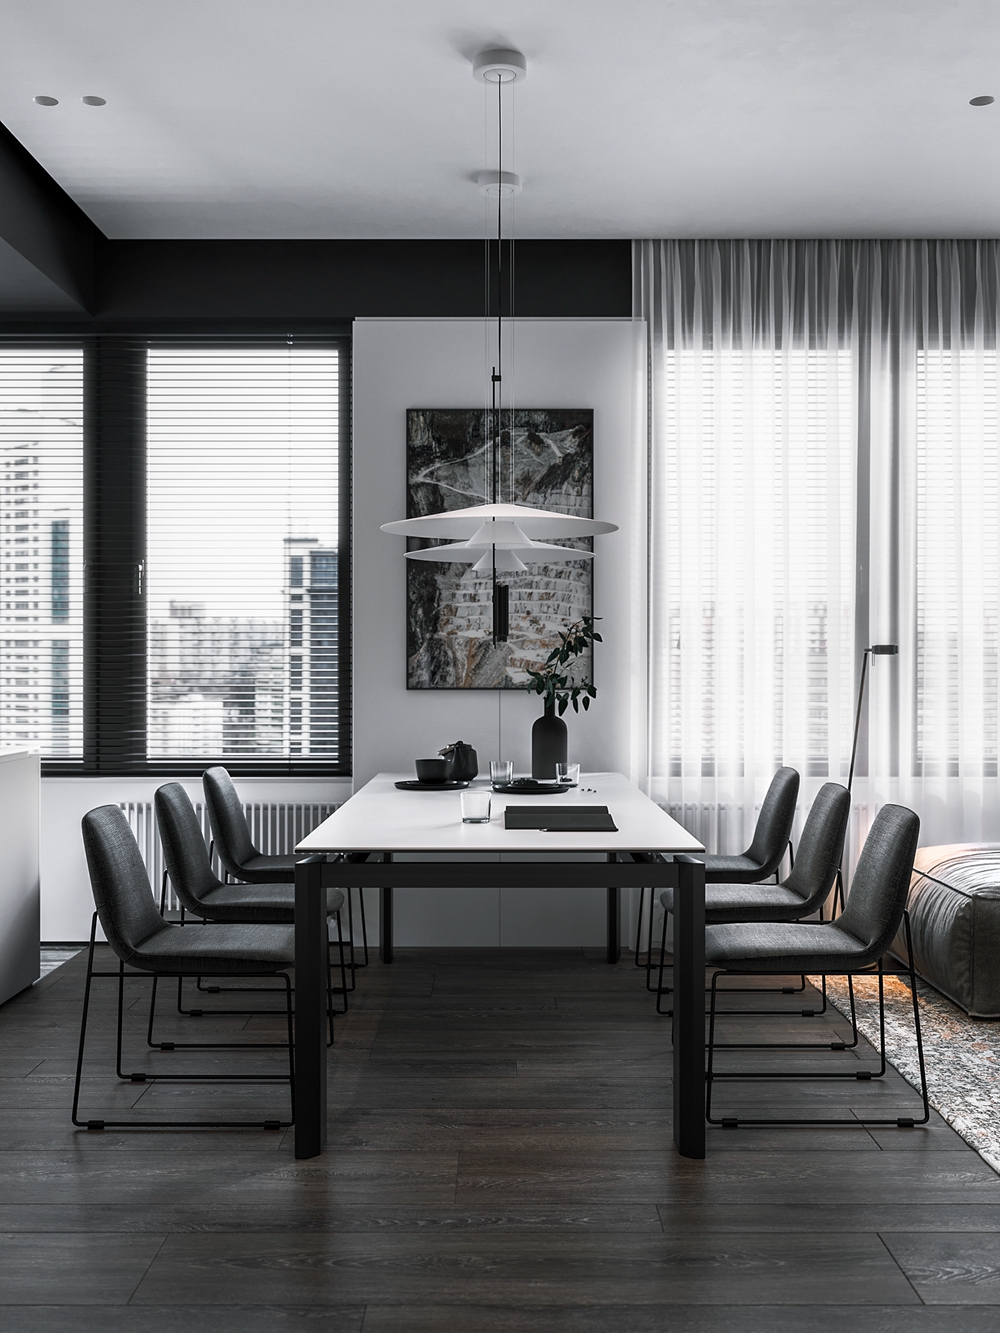 细腿餐椅塑造出精致感与有序感，黑白色搭配将得整个空间呈现的时尚而宁静。